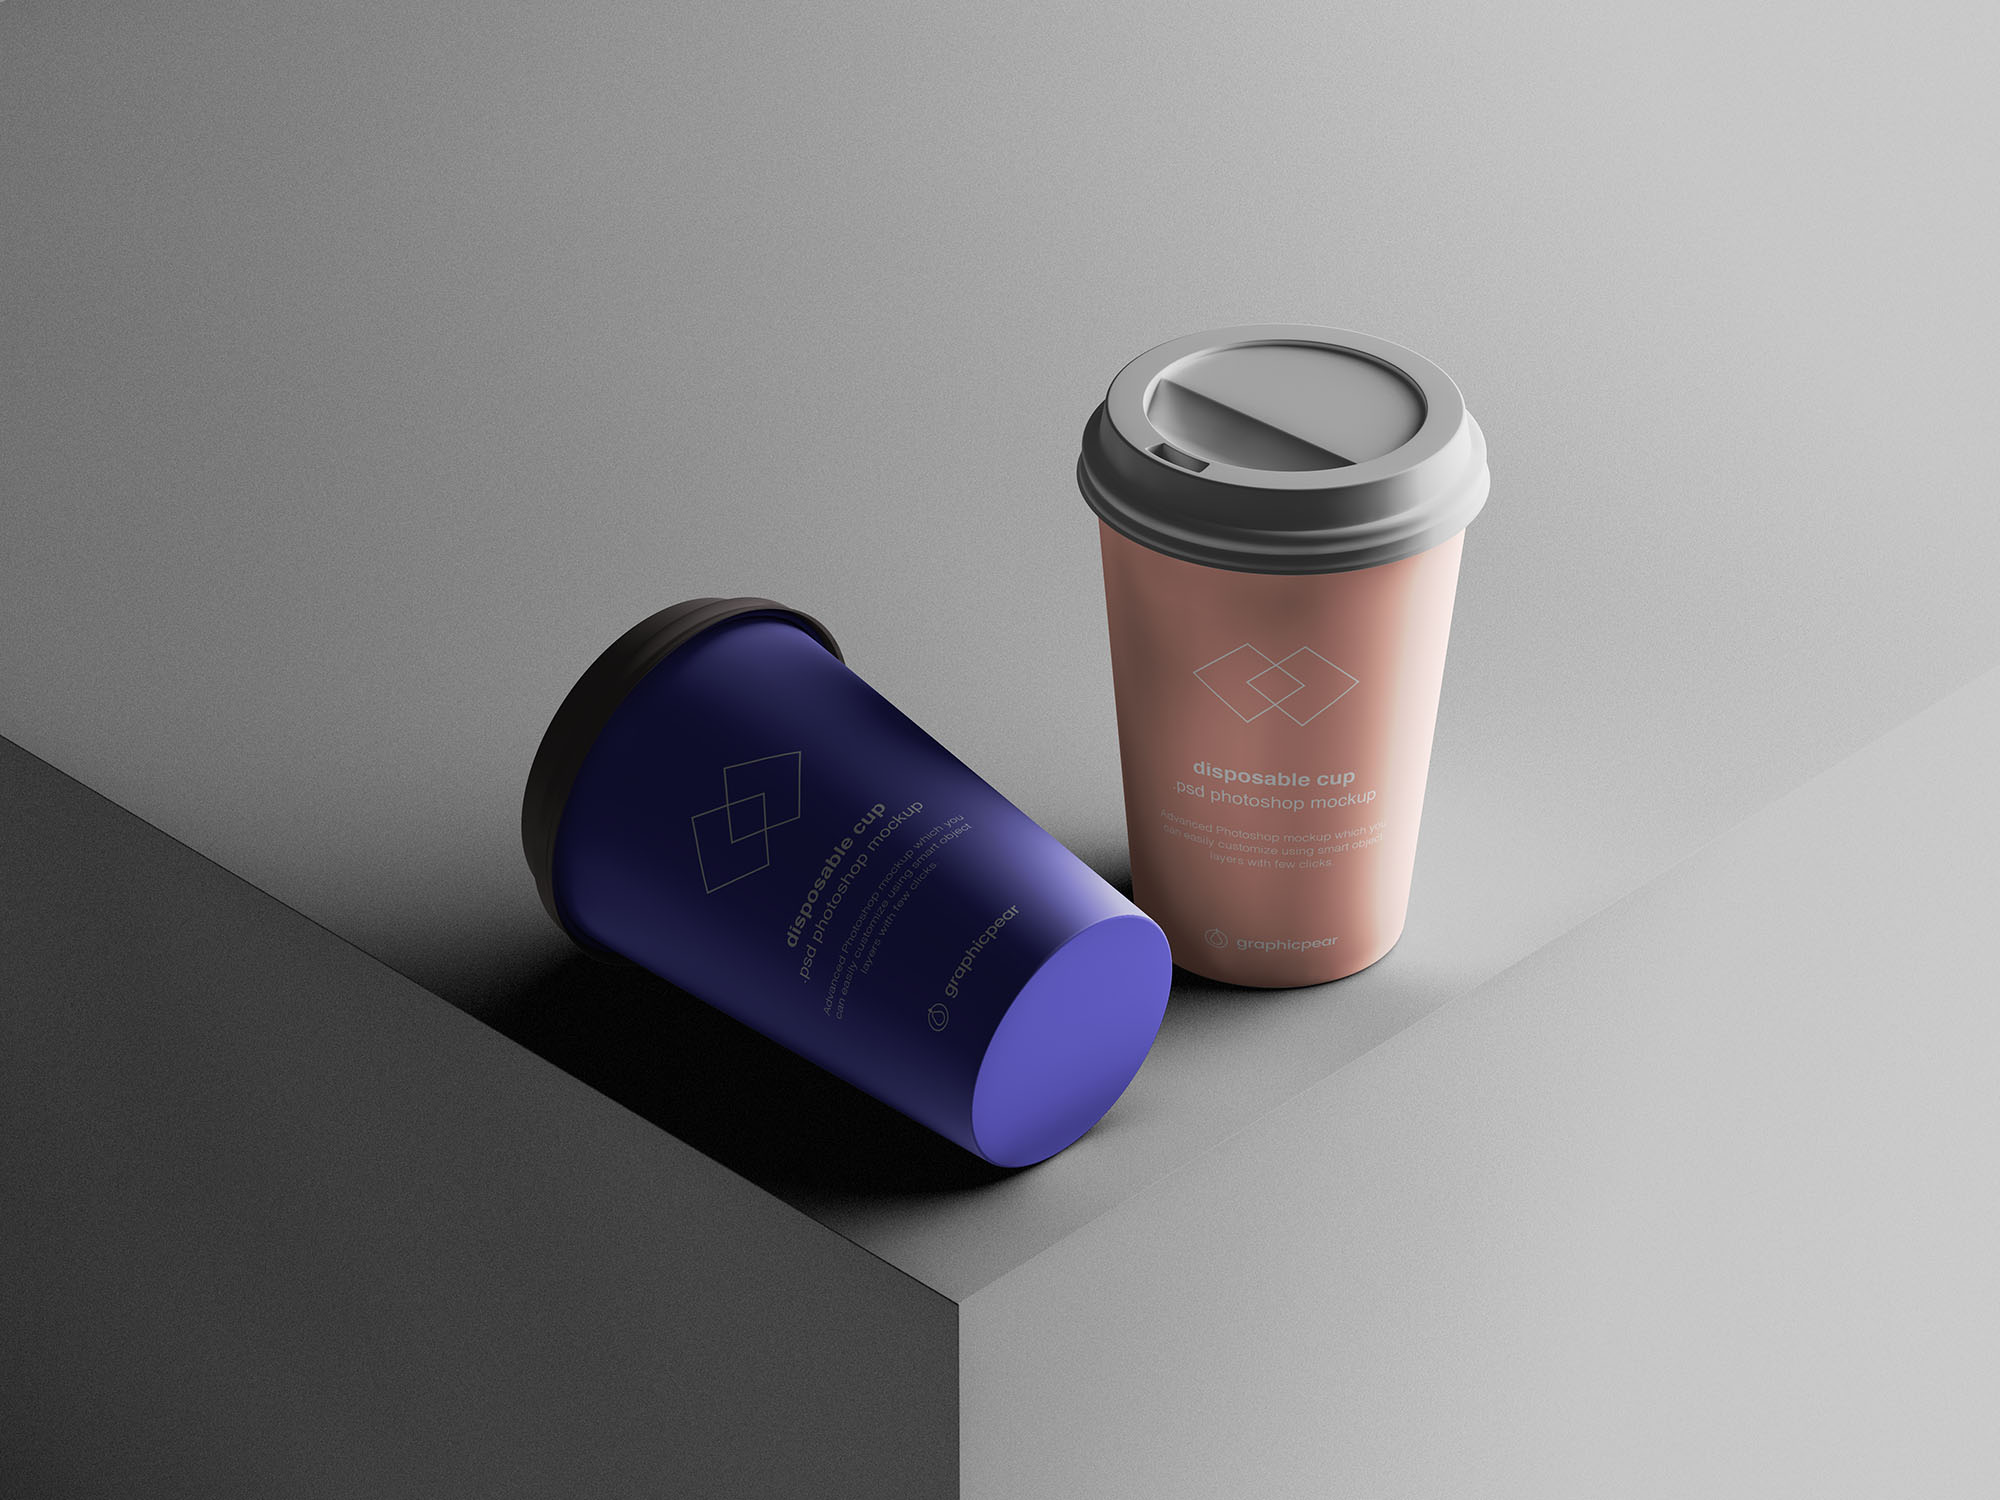 7个咖啡纸杯定制外观设计效果图样机模板 7 Coffee Cup Mockups插图(4)